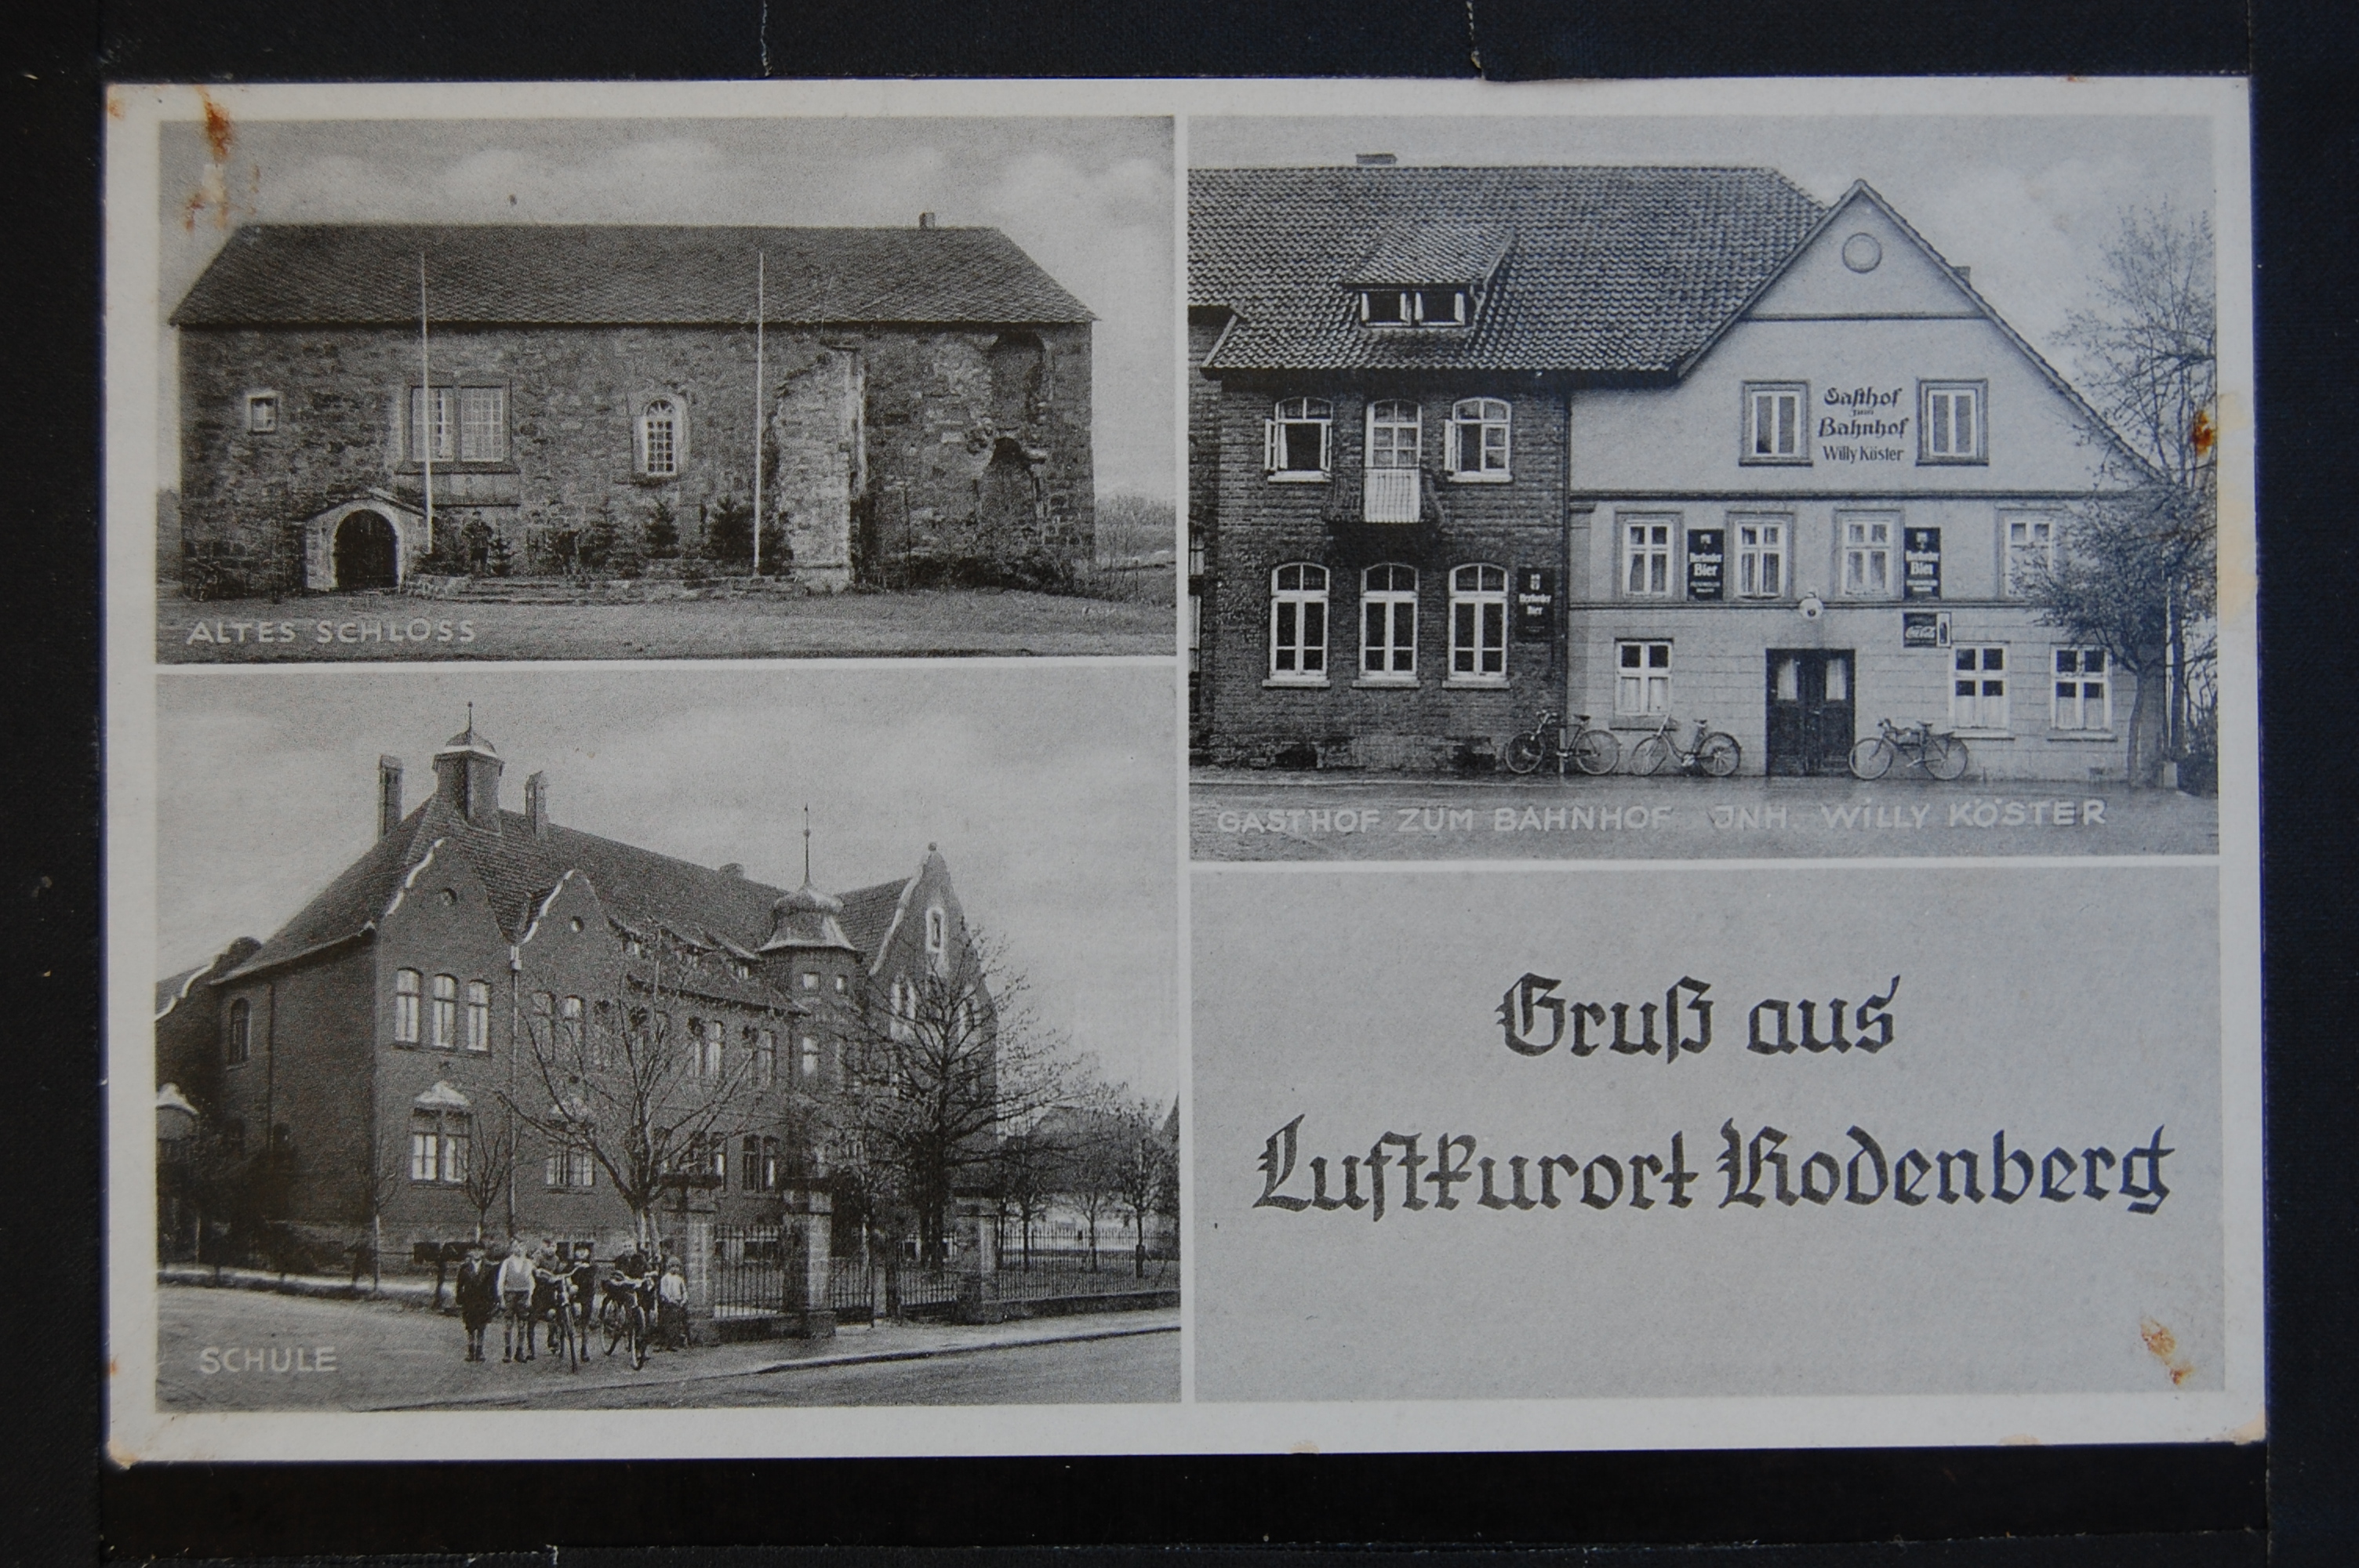 AK Rodenberg, Mehrbild, Schwarz/Weiß, 1941 (Museumslandschaft Amt Rodenberg e.V. CC BY-NC-SA)